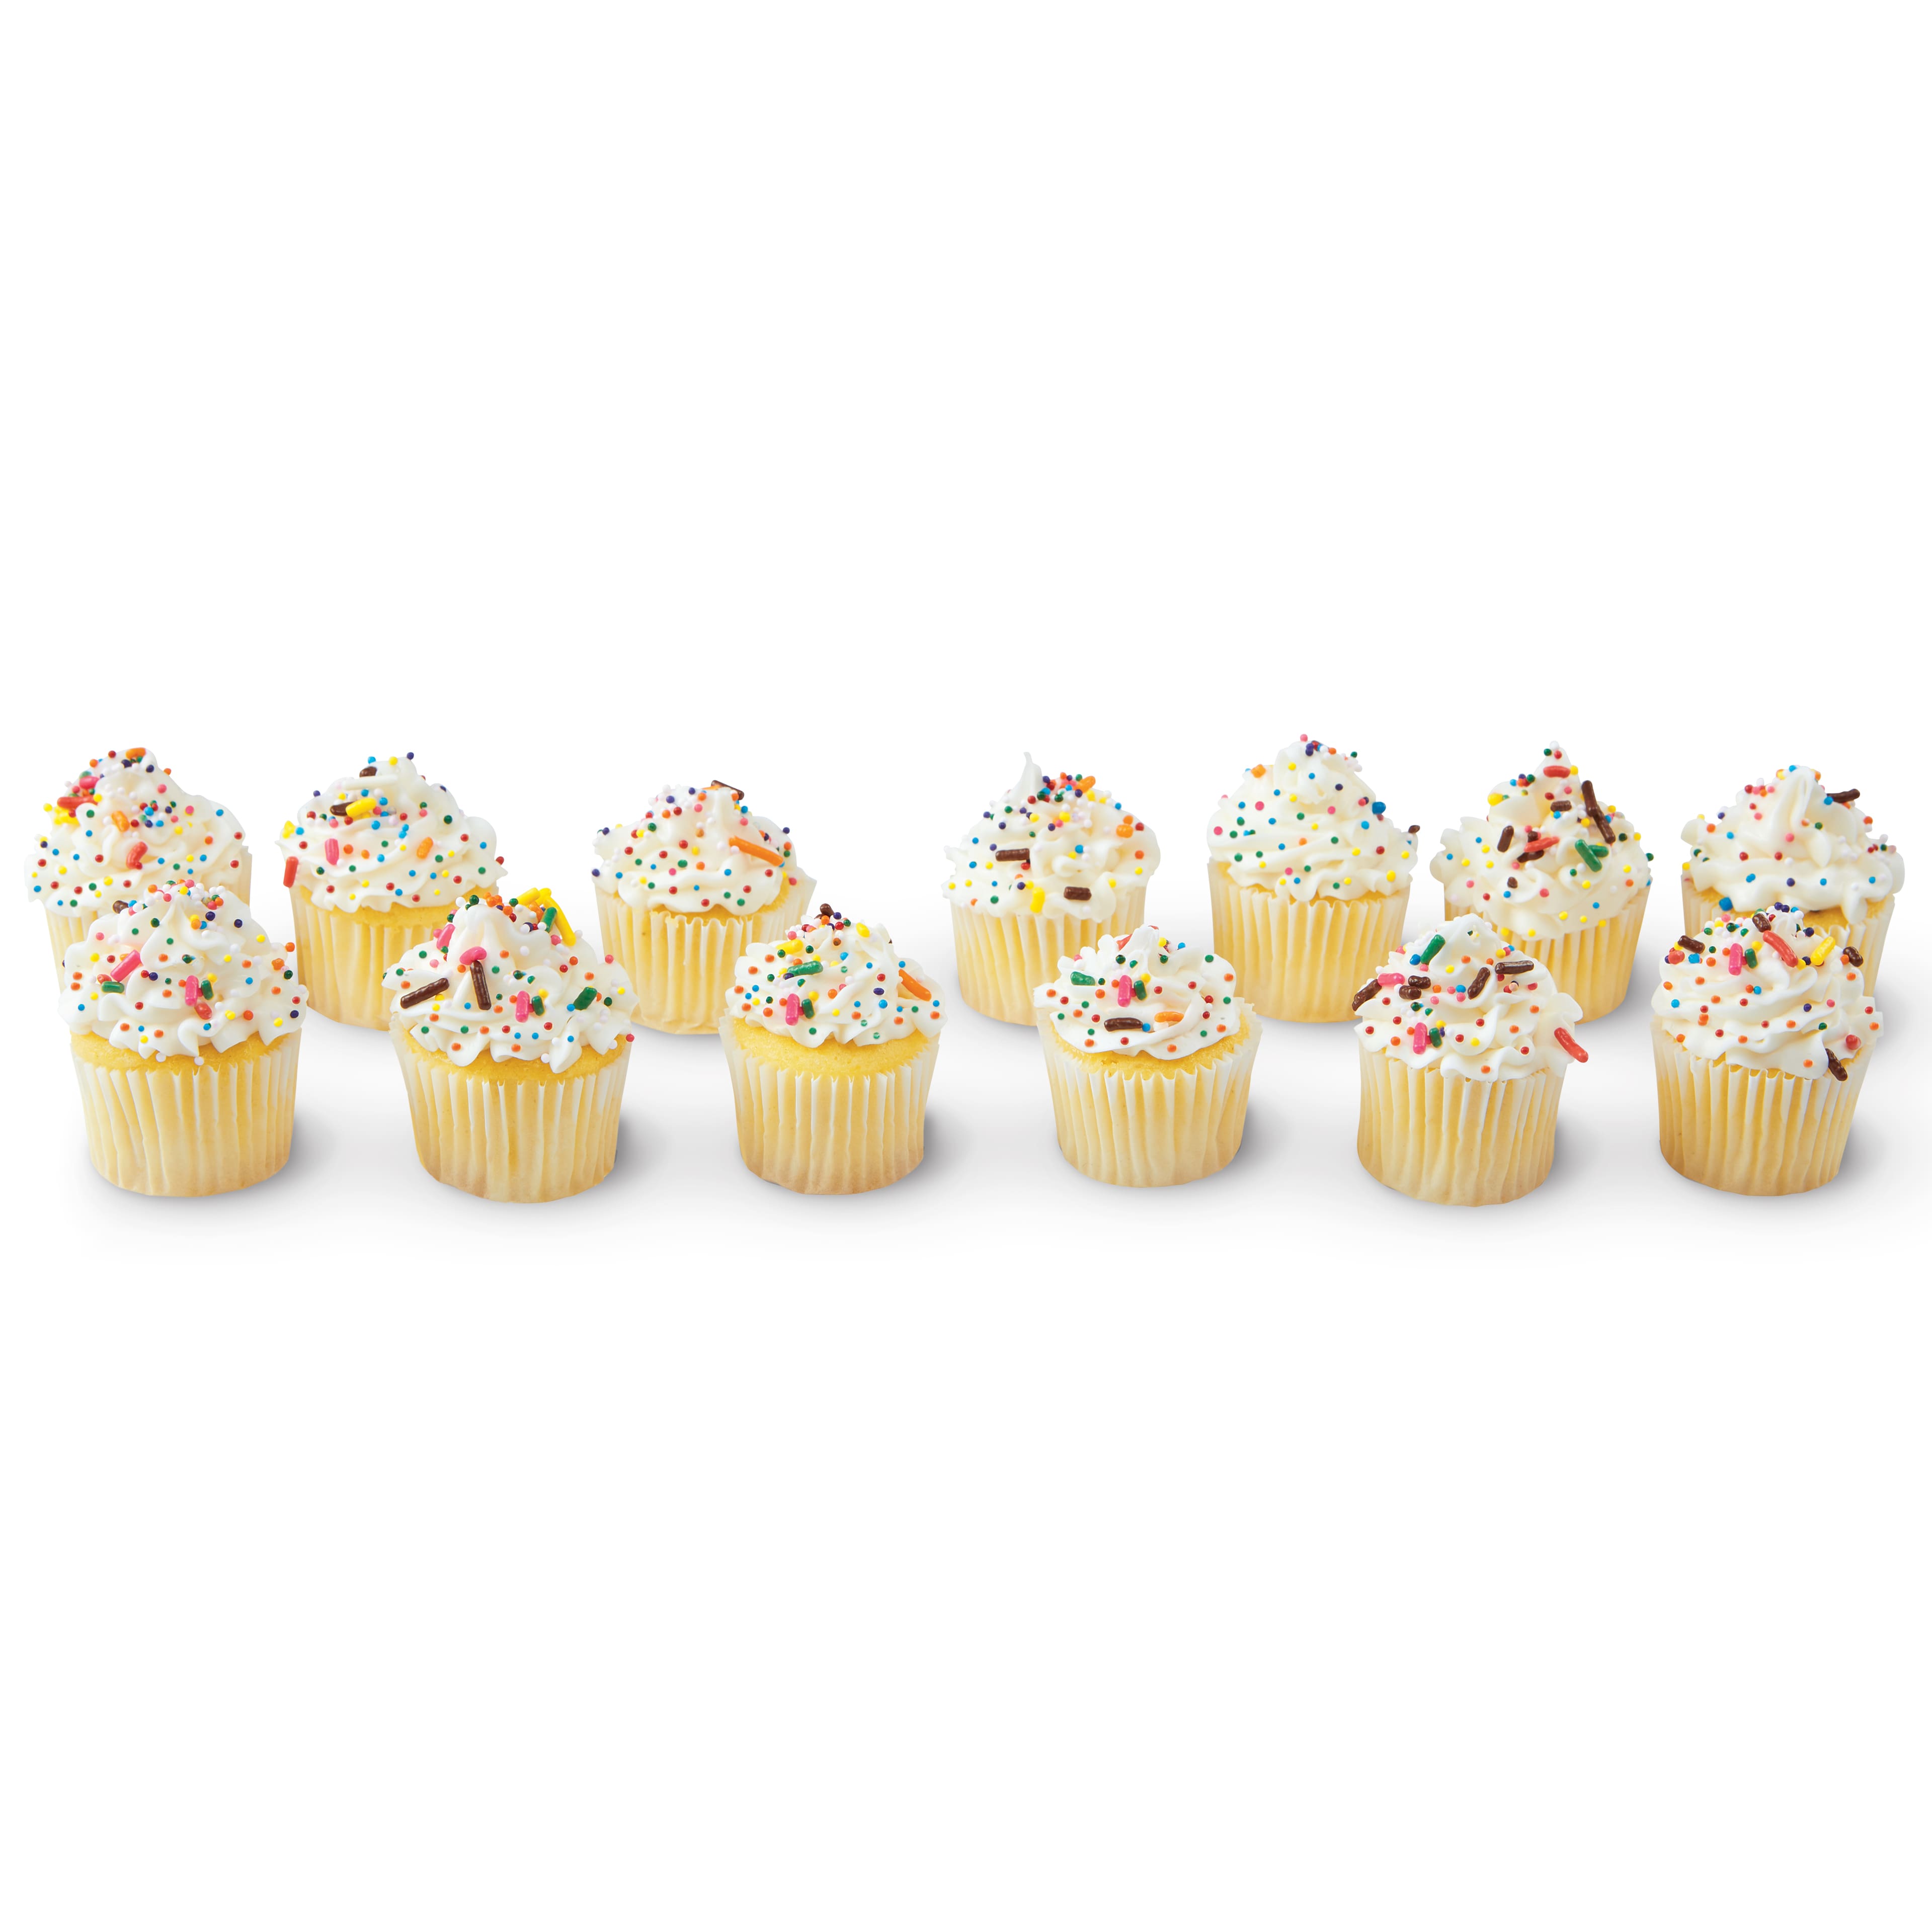 Moules pour 24 mini cupcakes